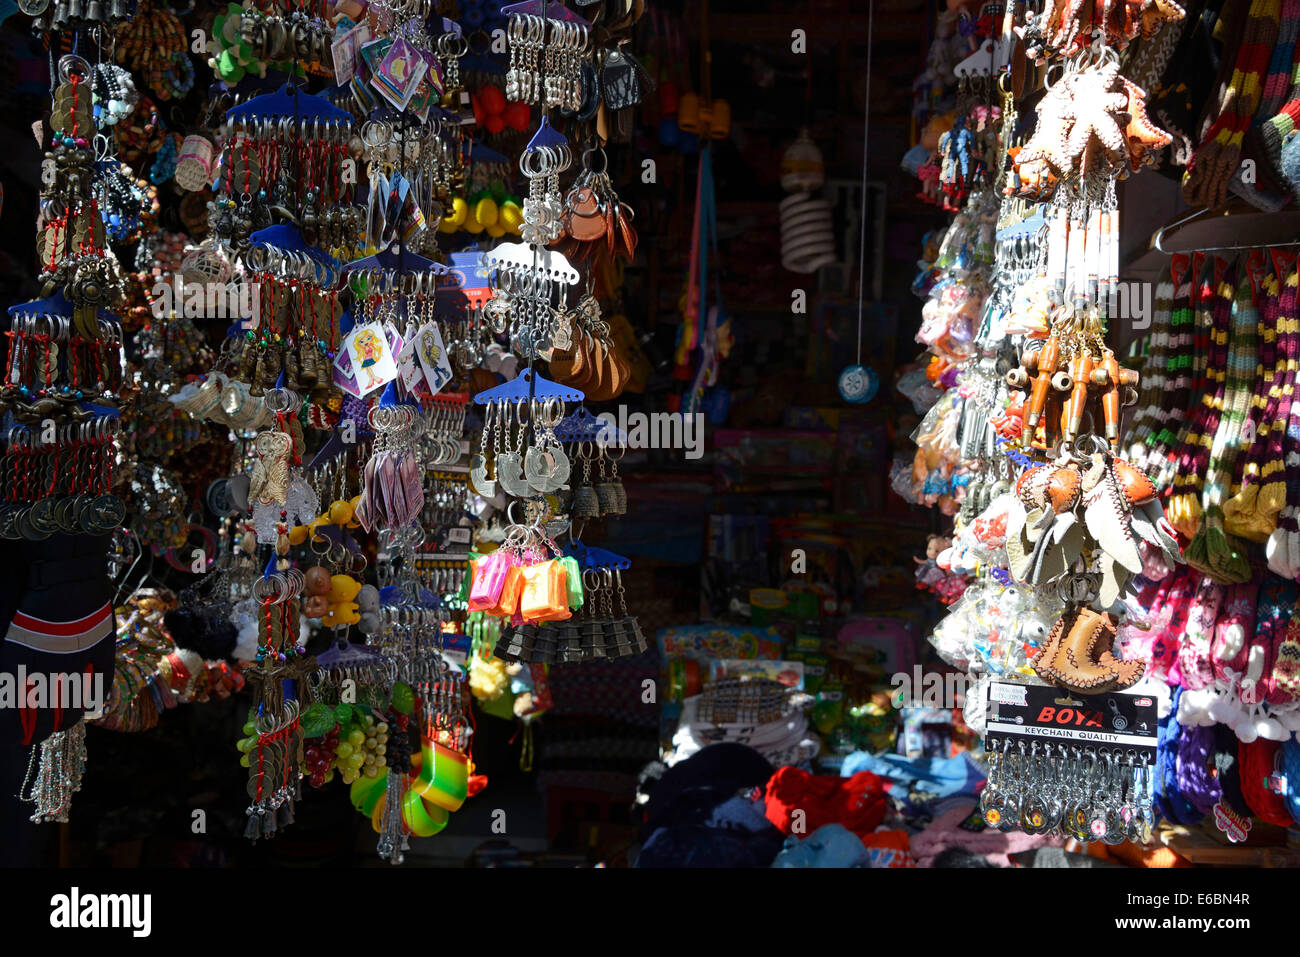 Ein indischer Souvenirladen, der Himalaya-Souvenirs in der Mall Road verkauft, einer beliebten Touristenattraktion in Shimla in Himachal Pradesh, Indien Stockfoto